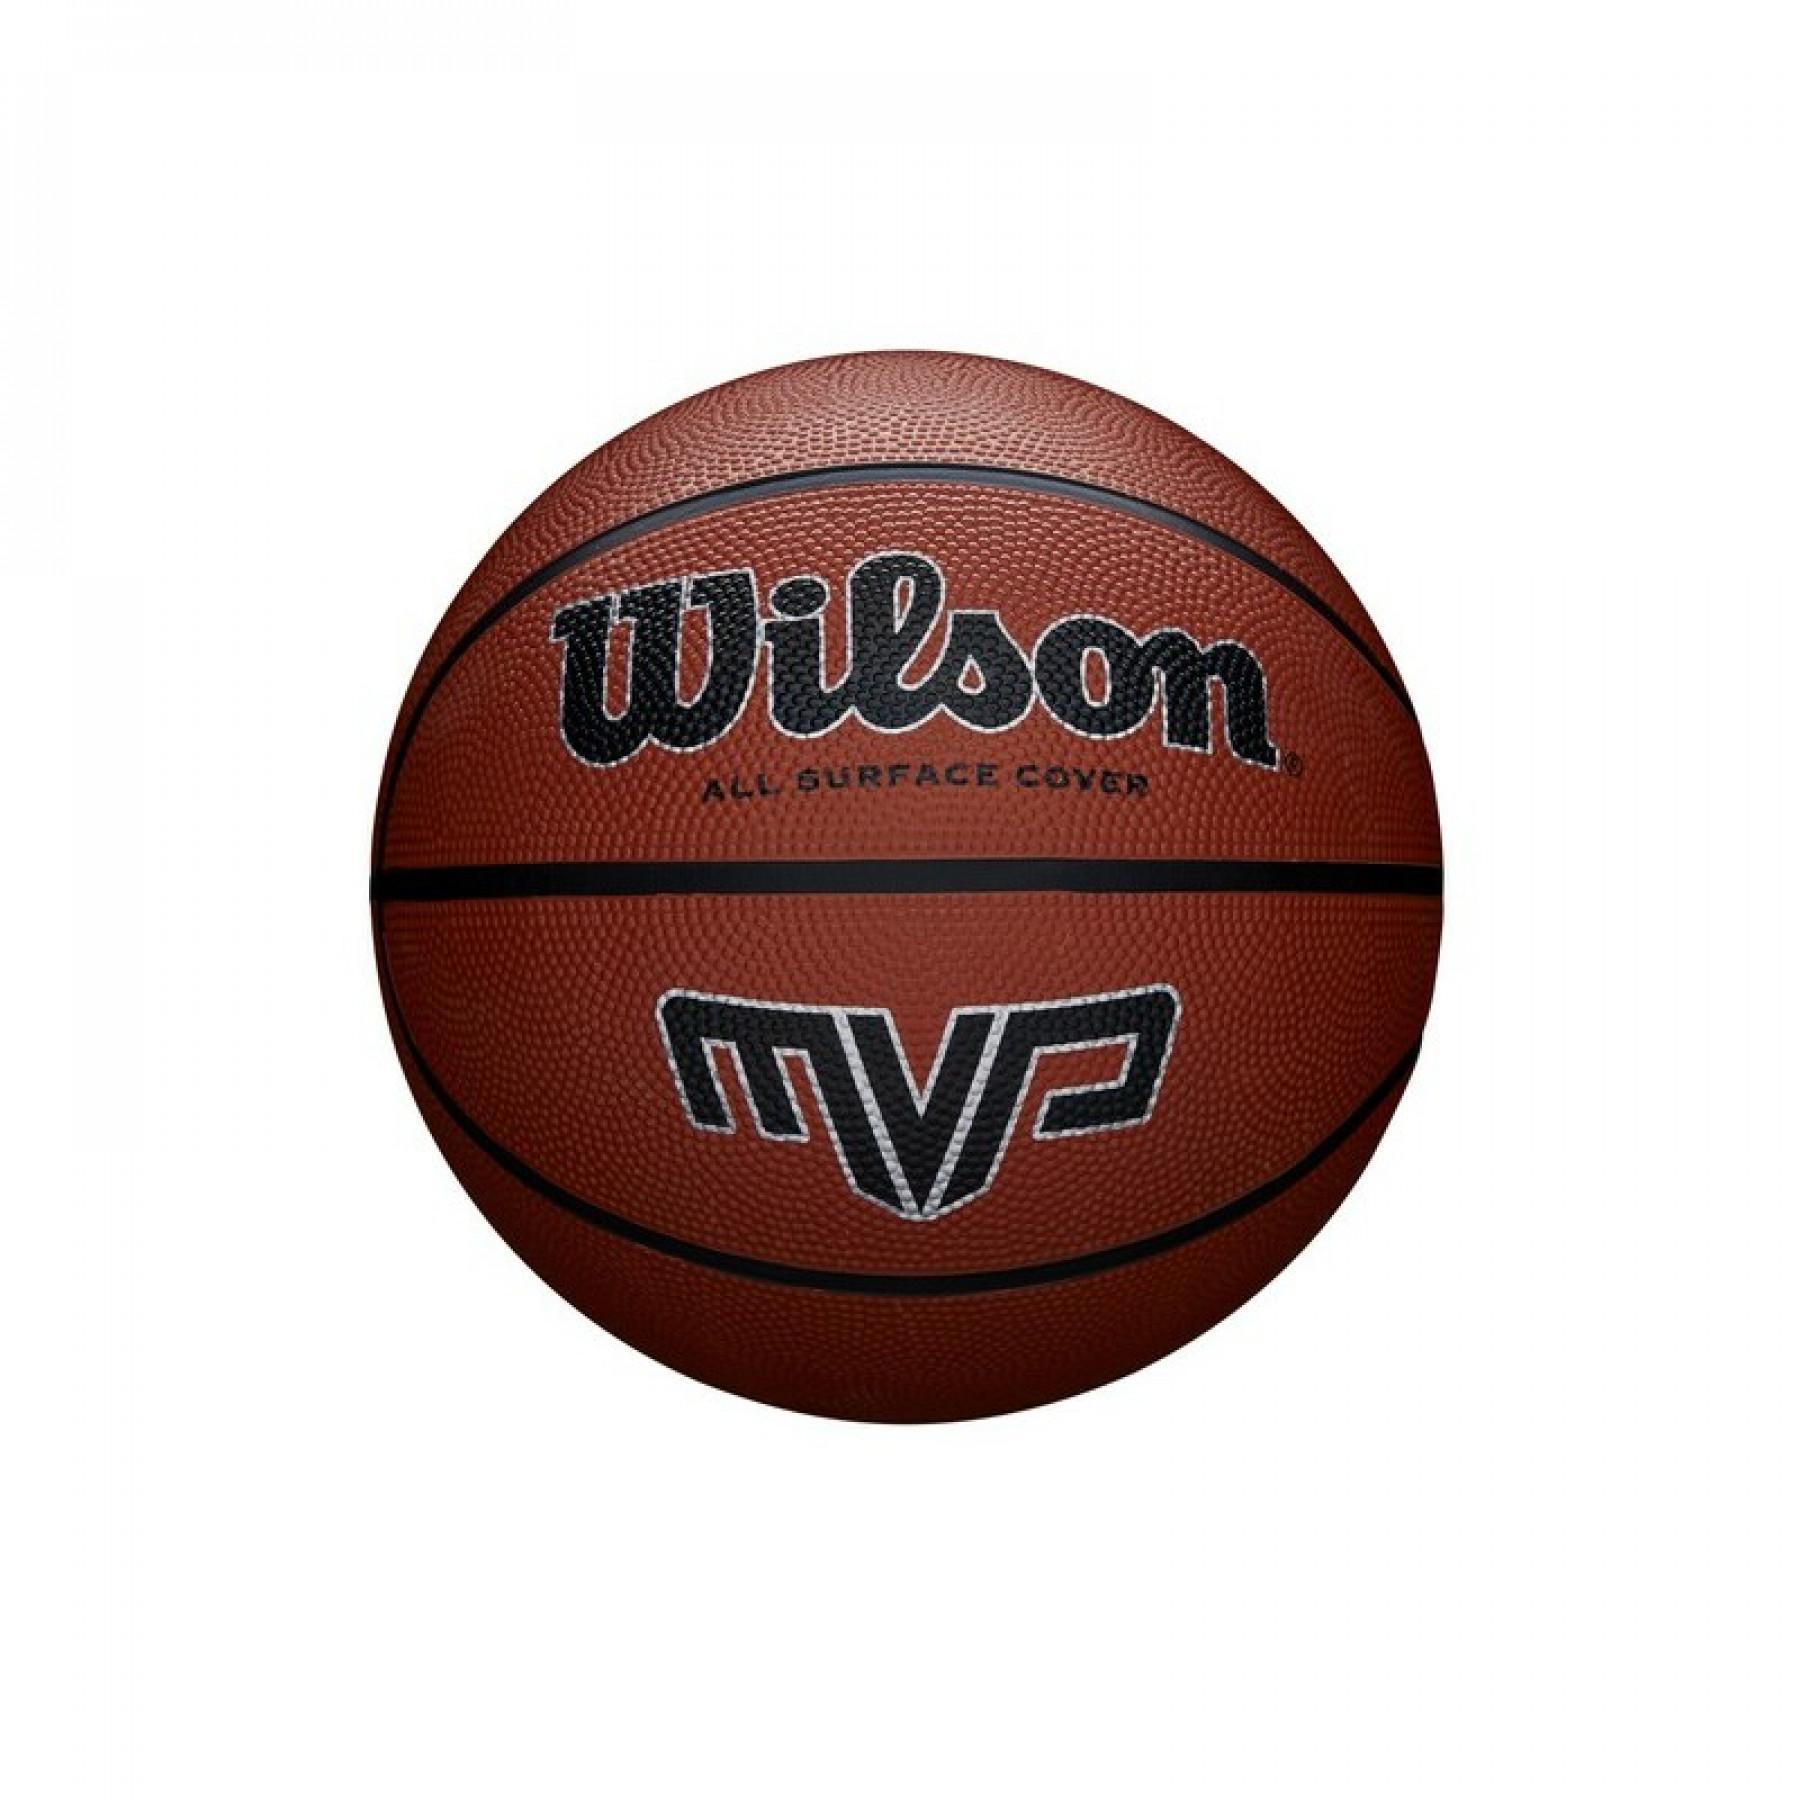 Ball Wilson MVP 295 Classic